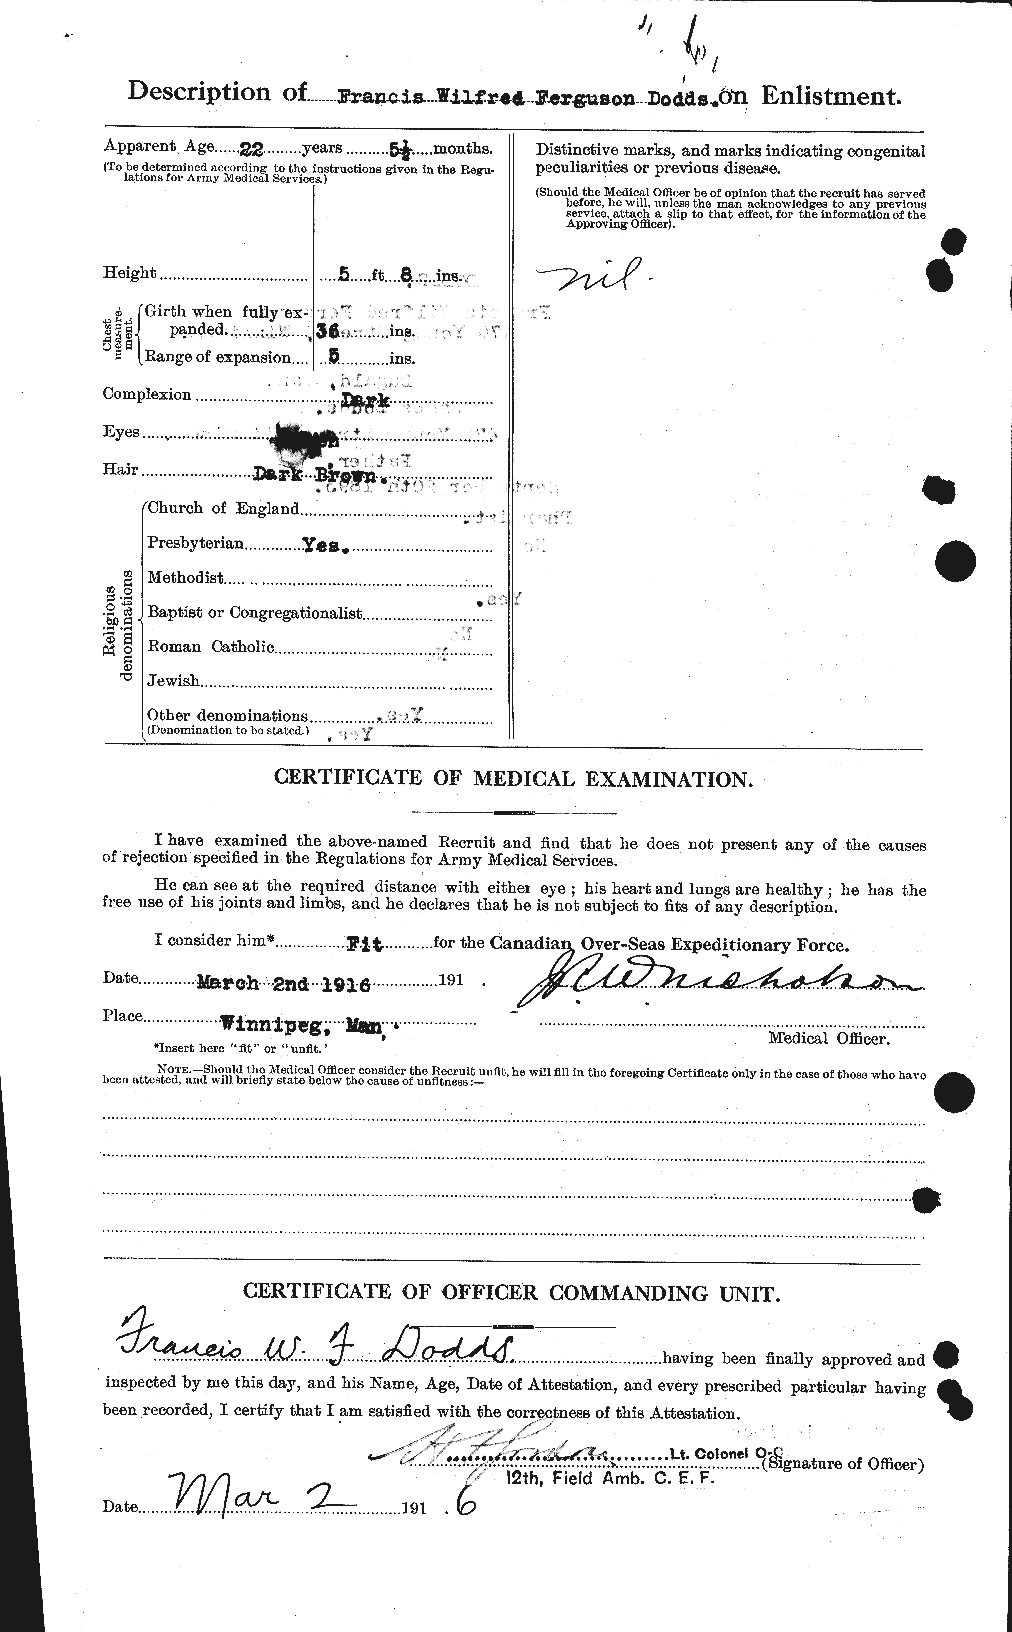 Dossiers du Personnel de la Première Guerre mondiale - CEC 294371b